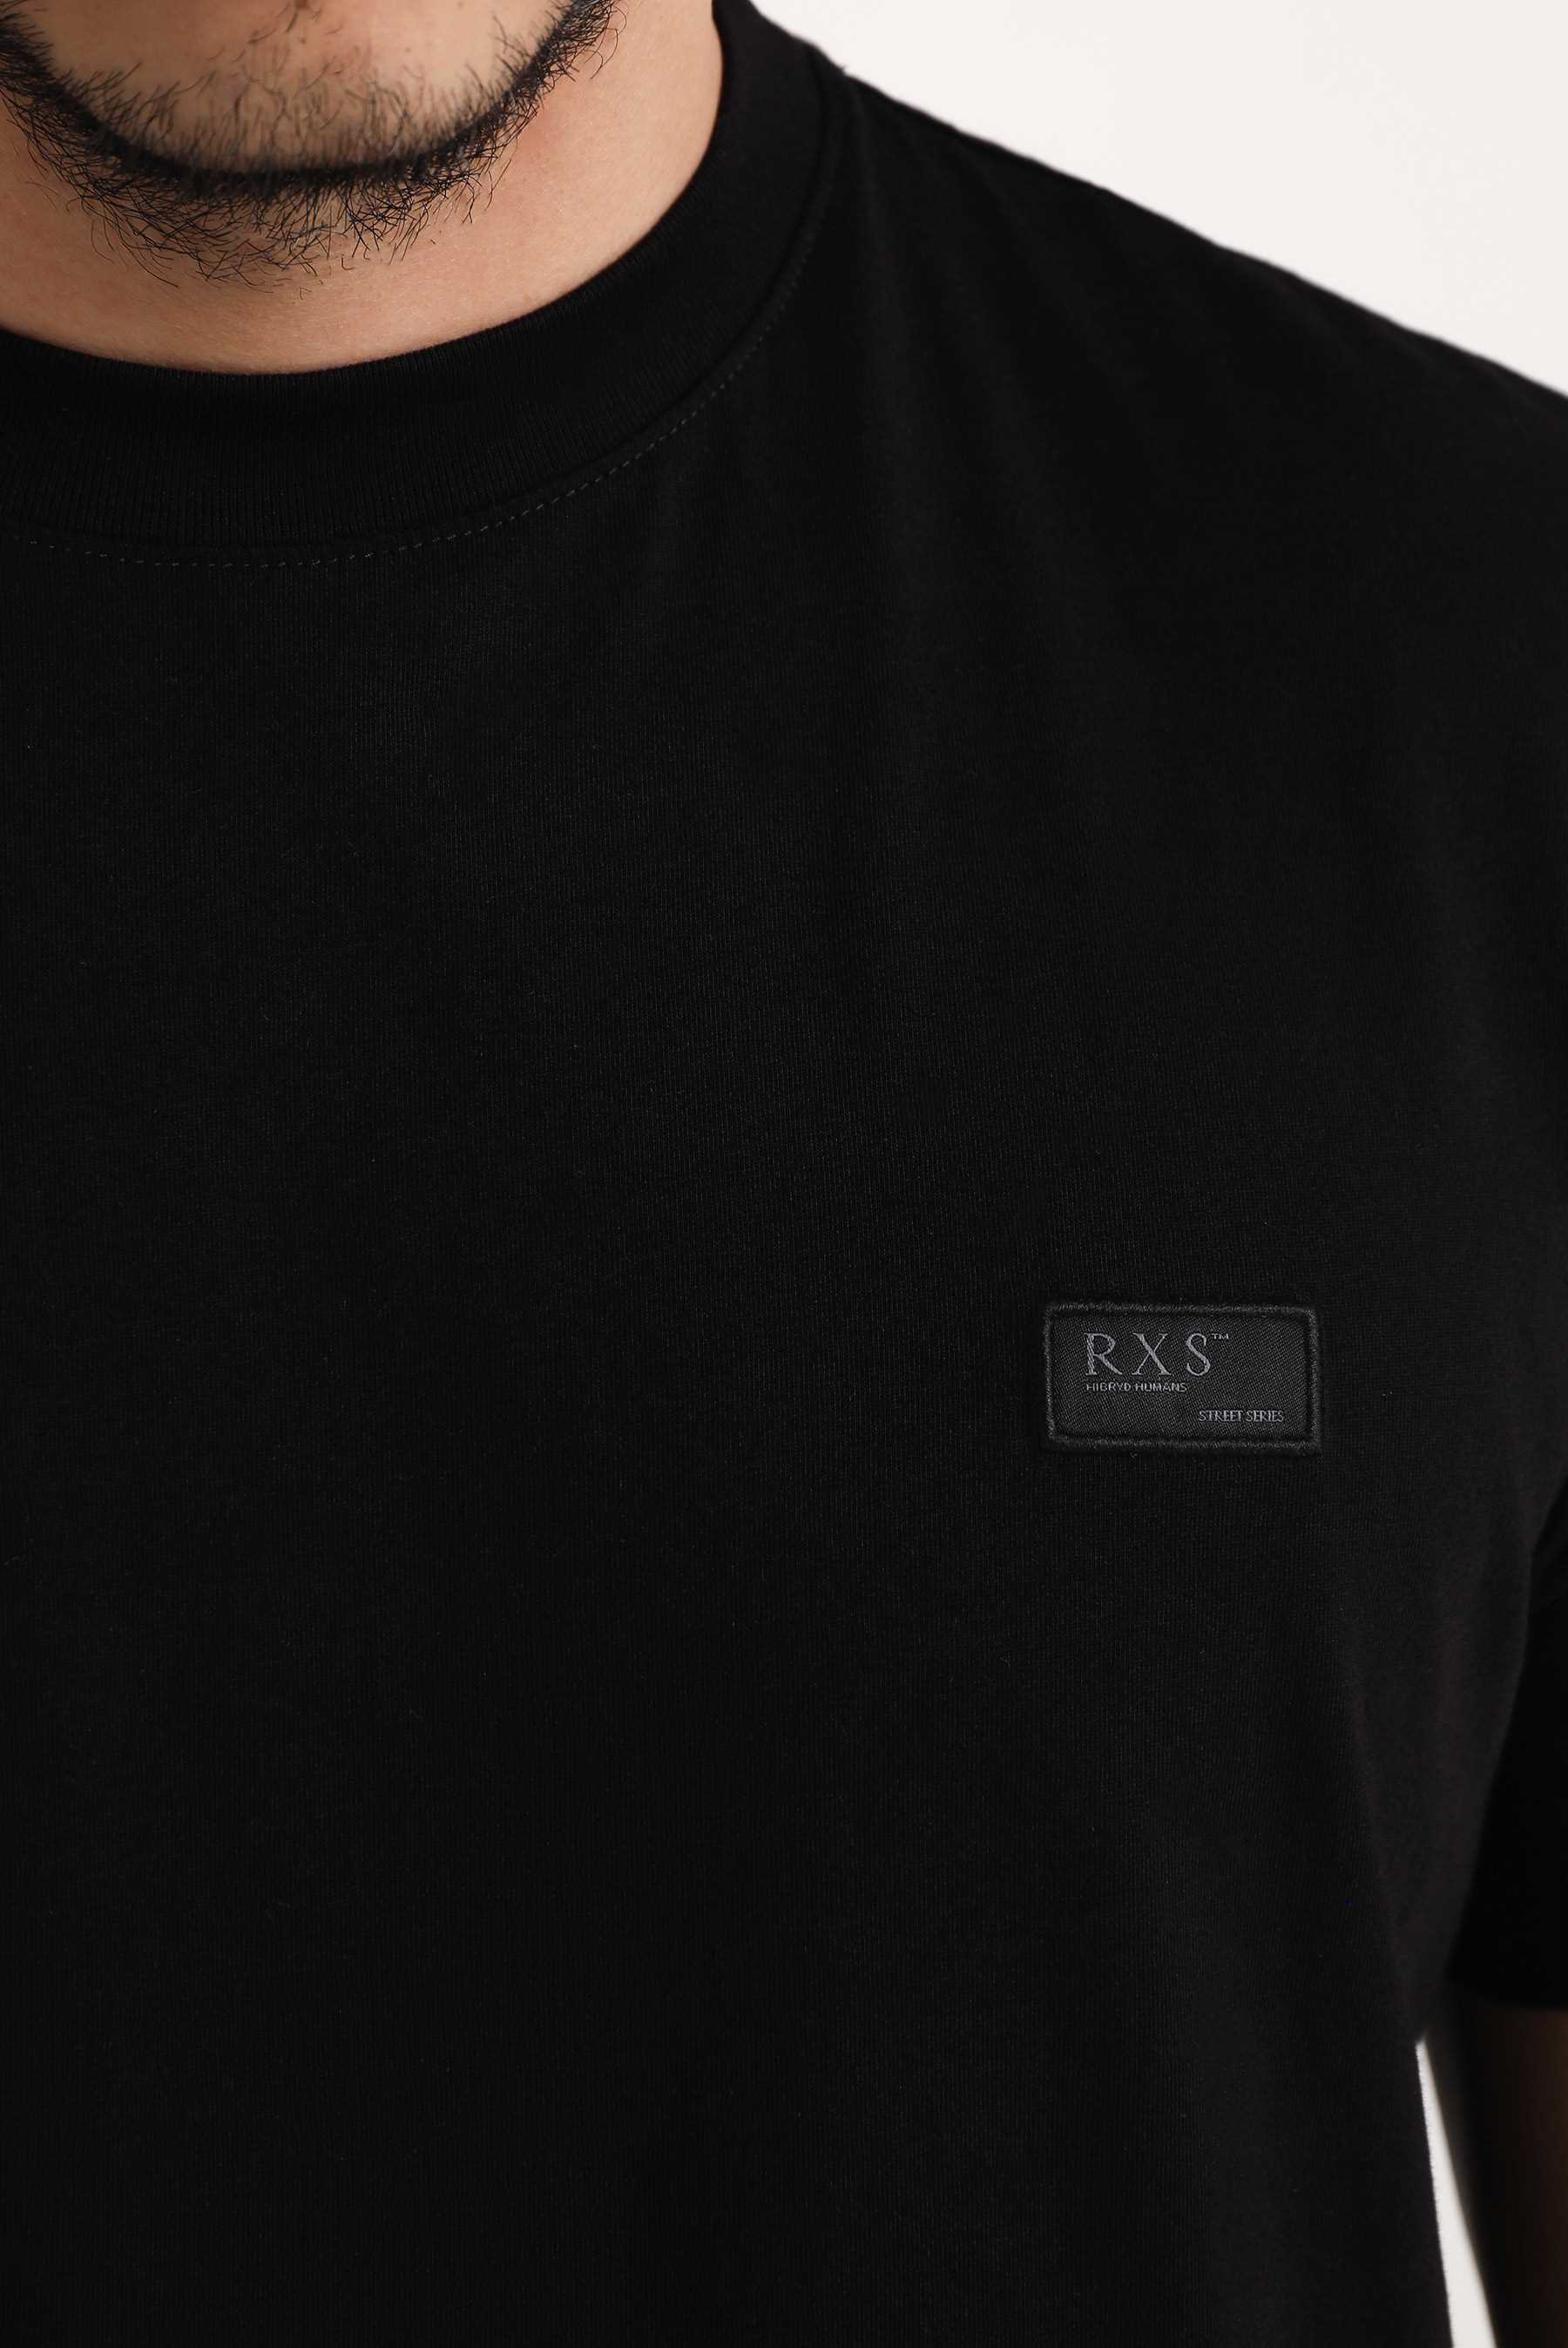 INC - Camiseta básica para hombre, color negro, talla L, Negro 